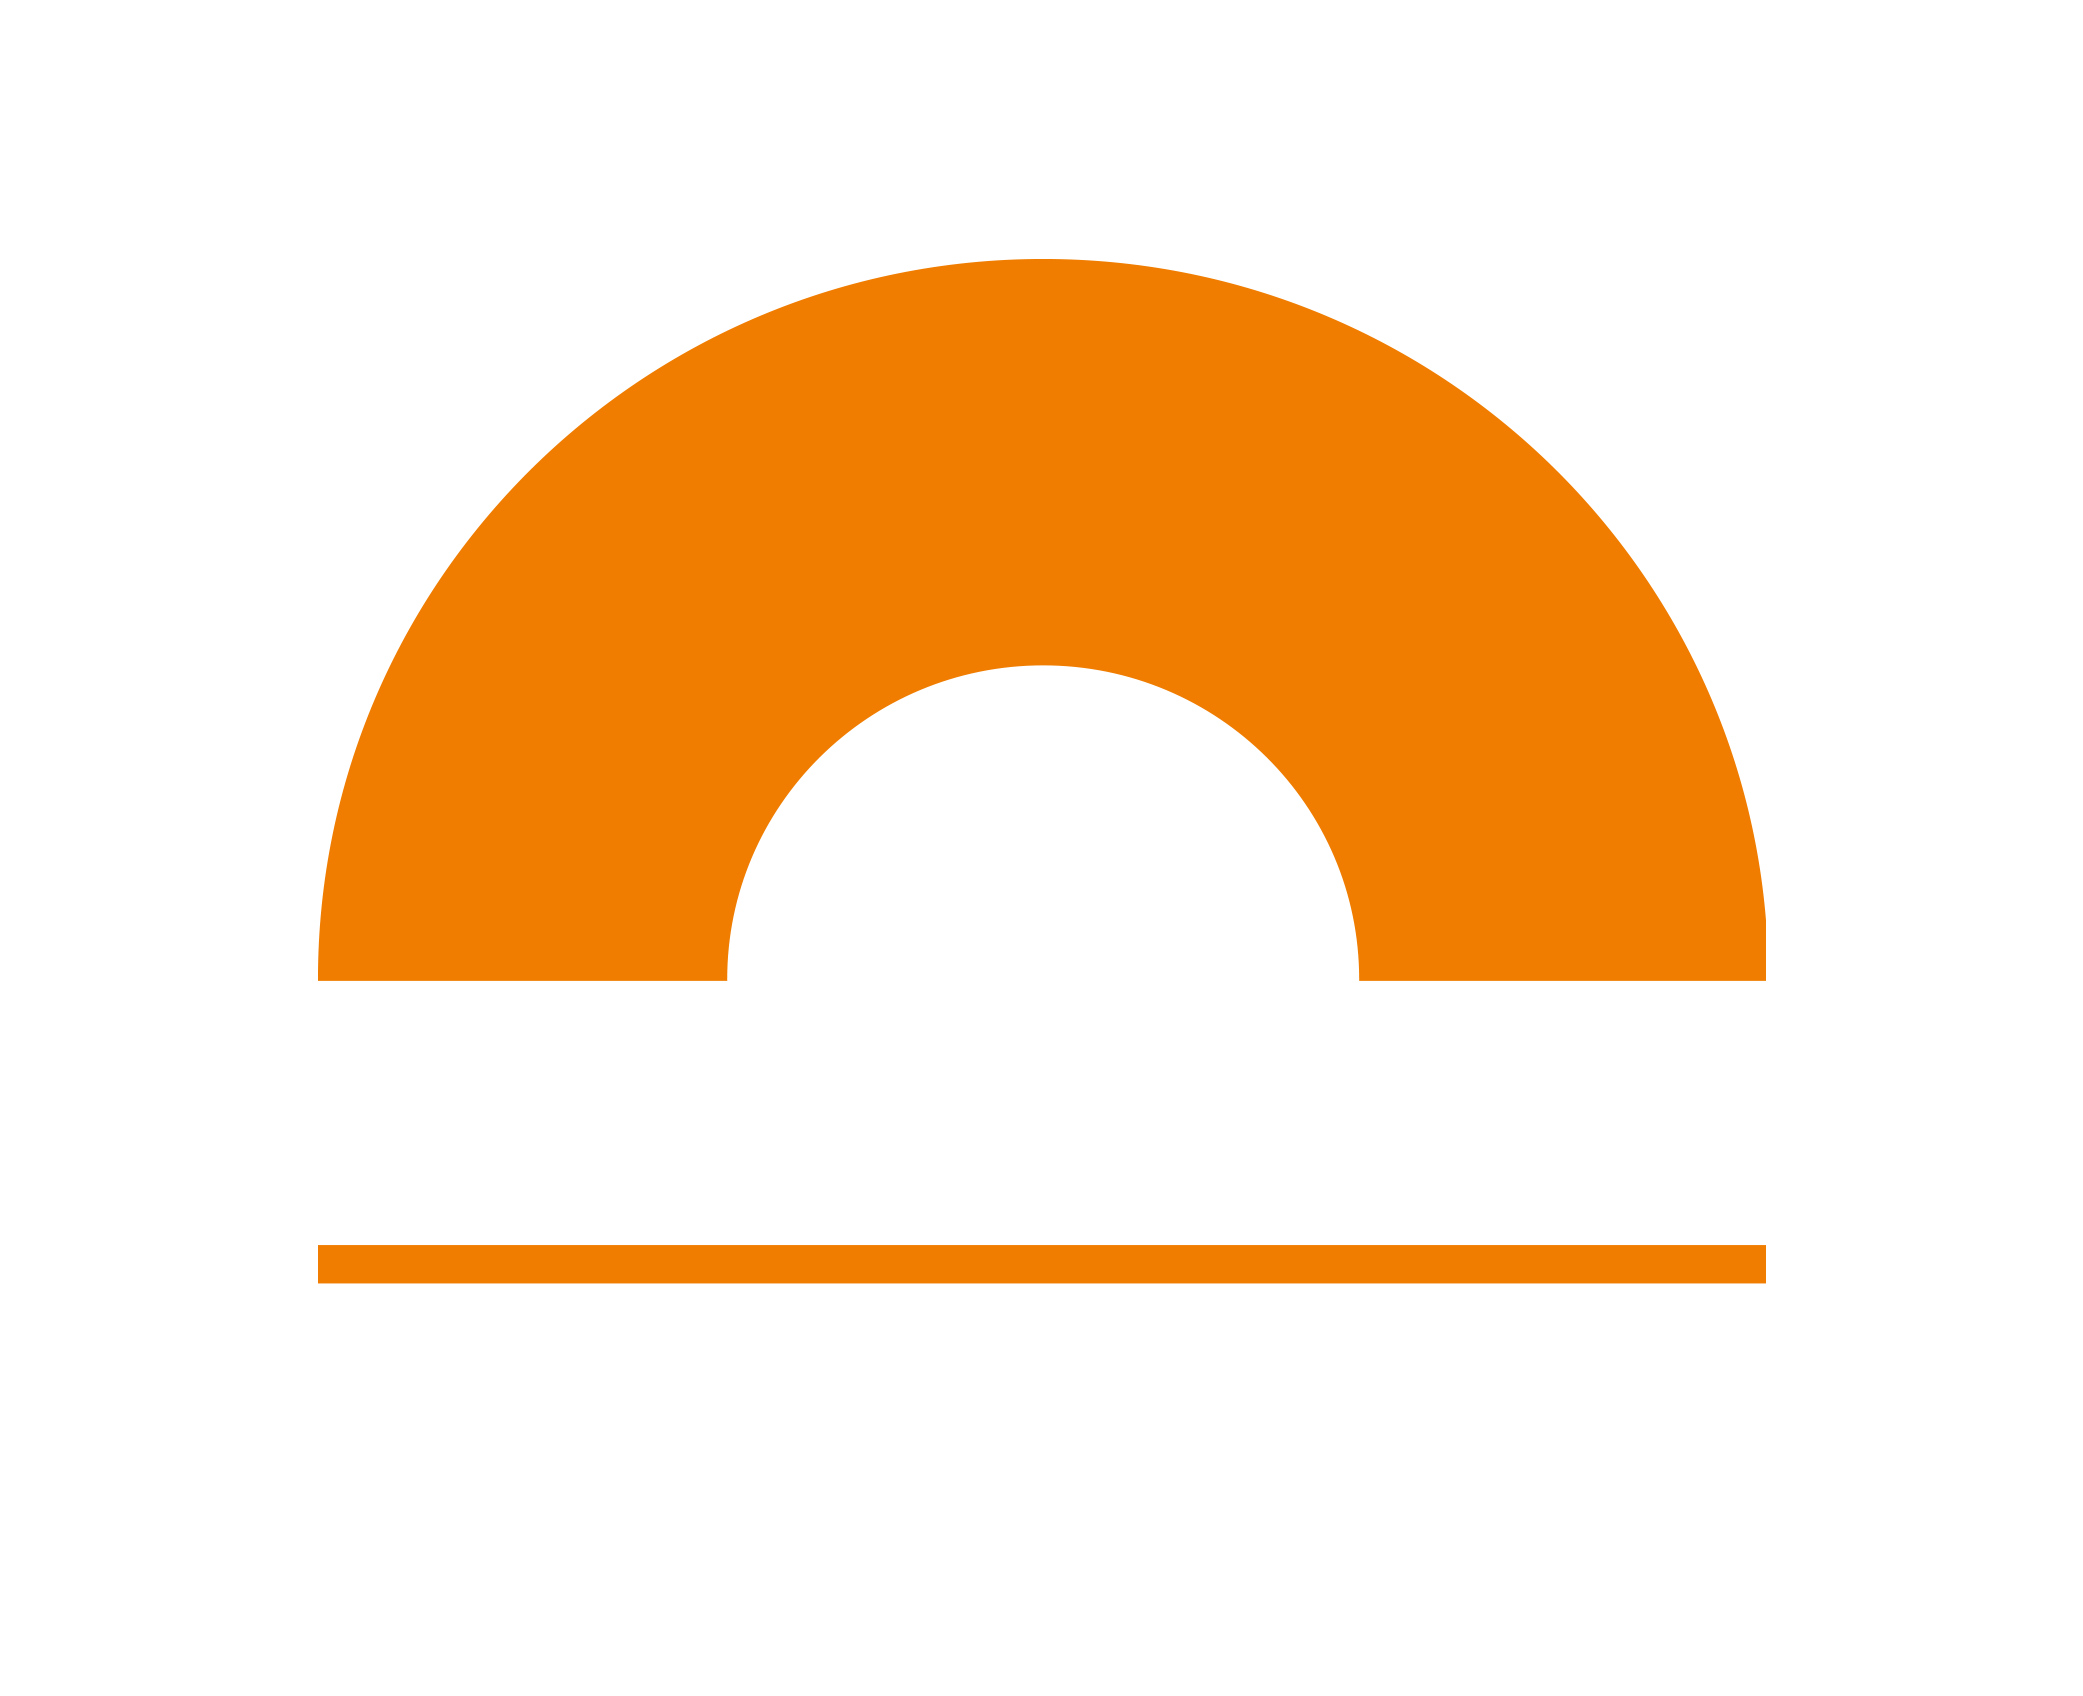 Chimen Aike